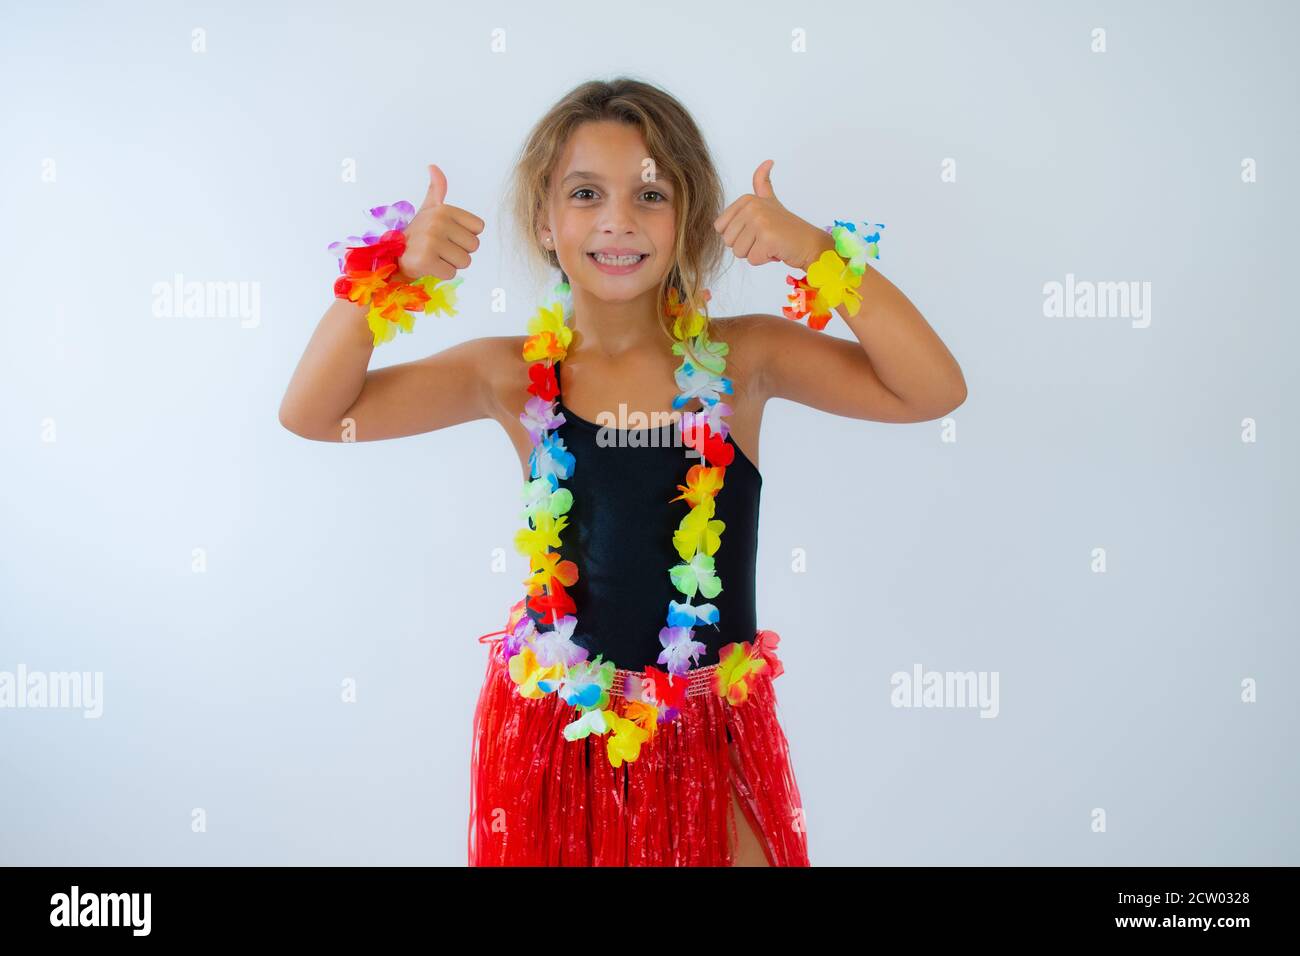 Petite fille portant une robe hawaïenne gestante sur fond blanc Photo Stock  - Alamy